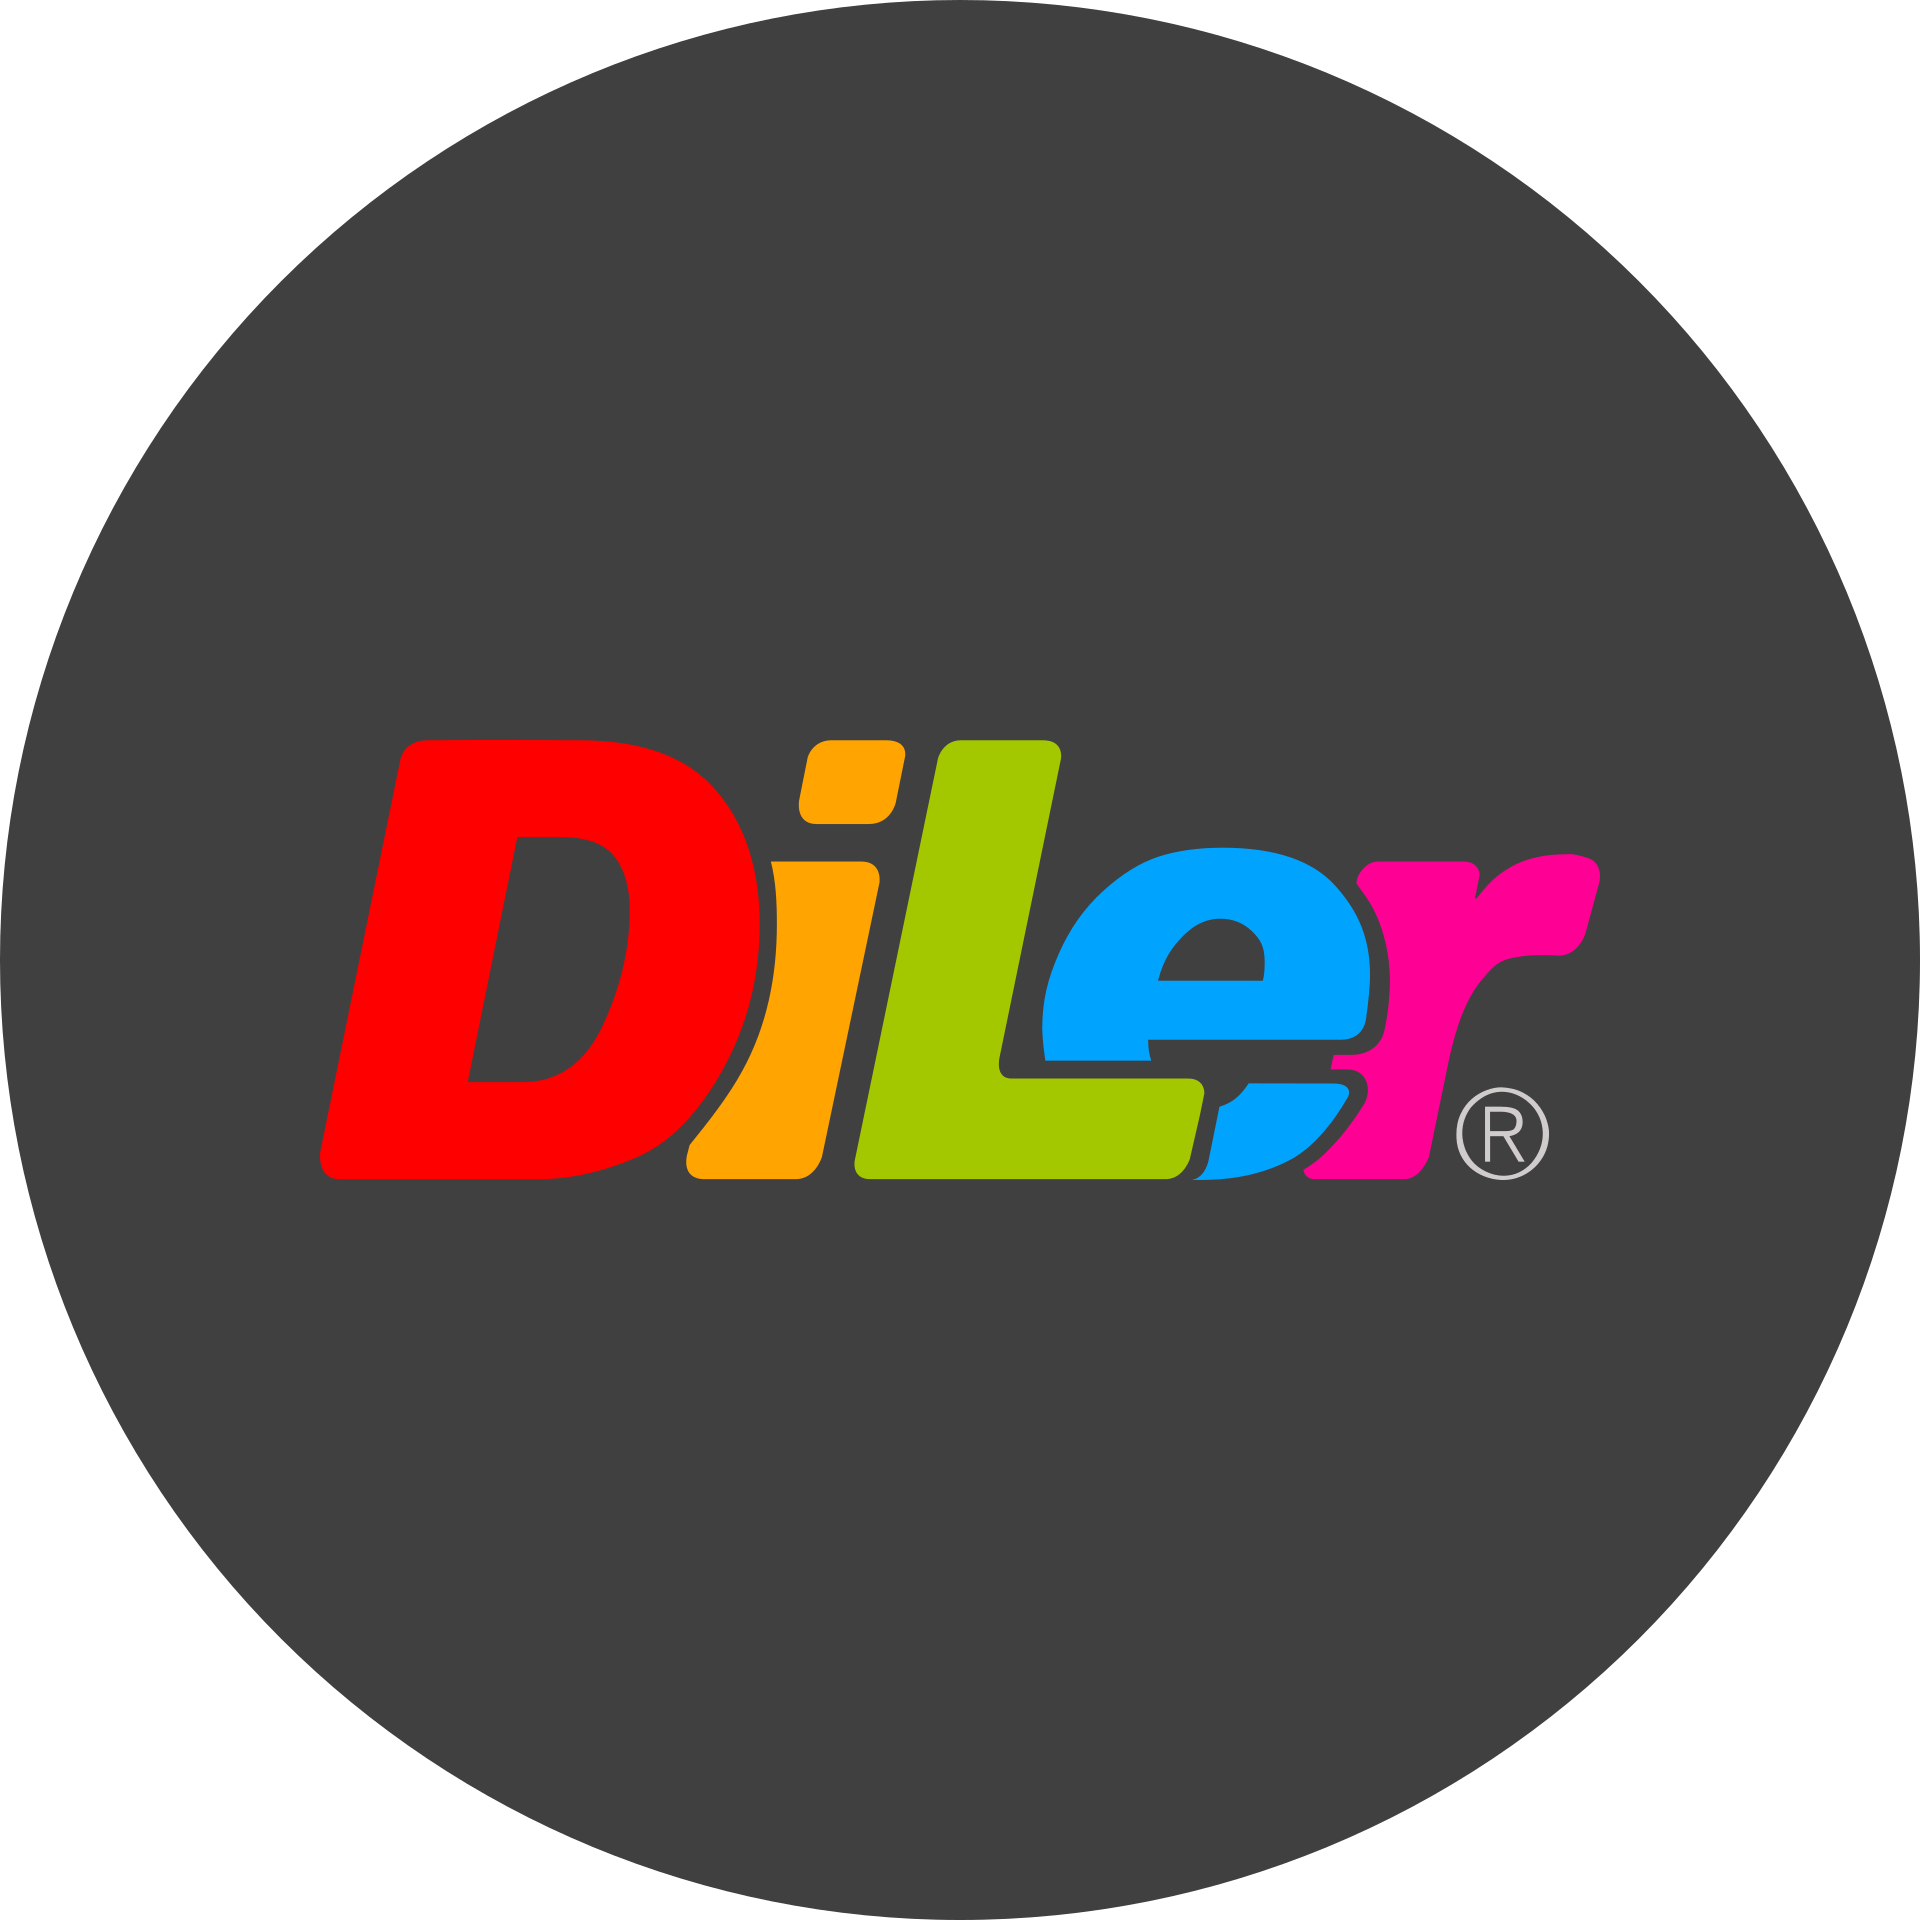 DiLer - Digitale Lernumgebung - Free Open Source Lernplattform - Learning Management System - Logo 1920